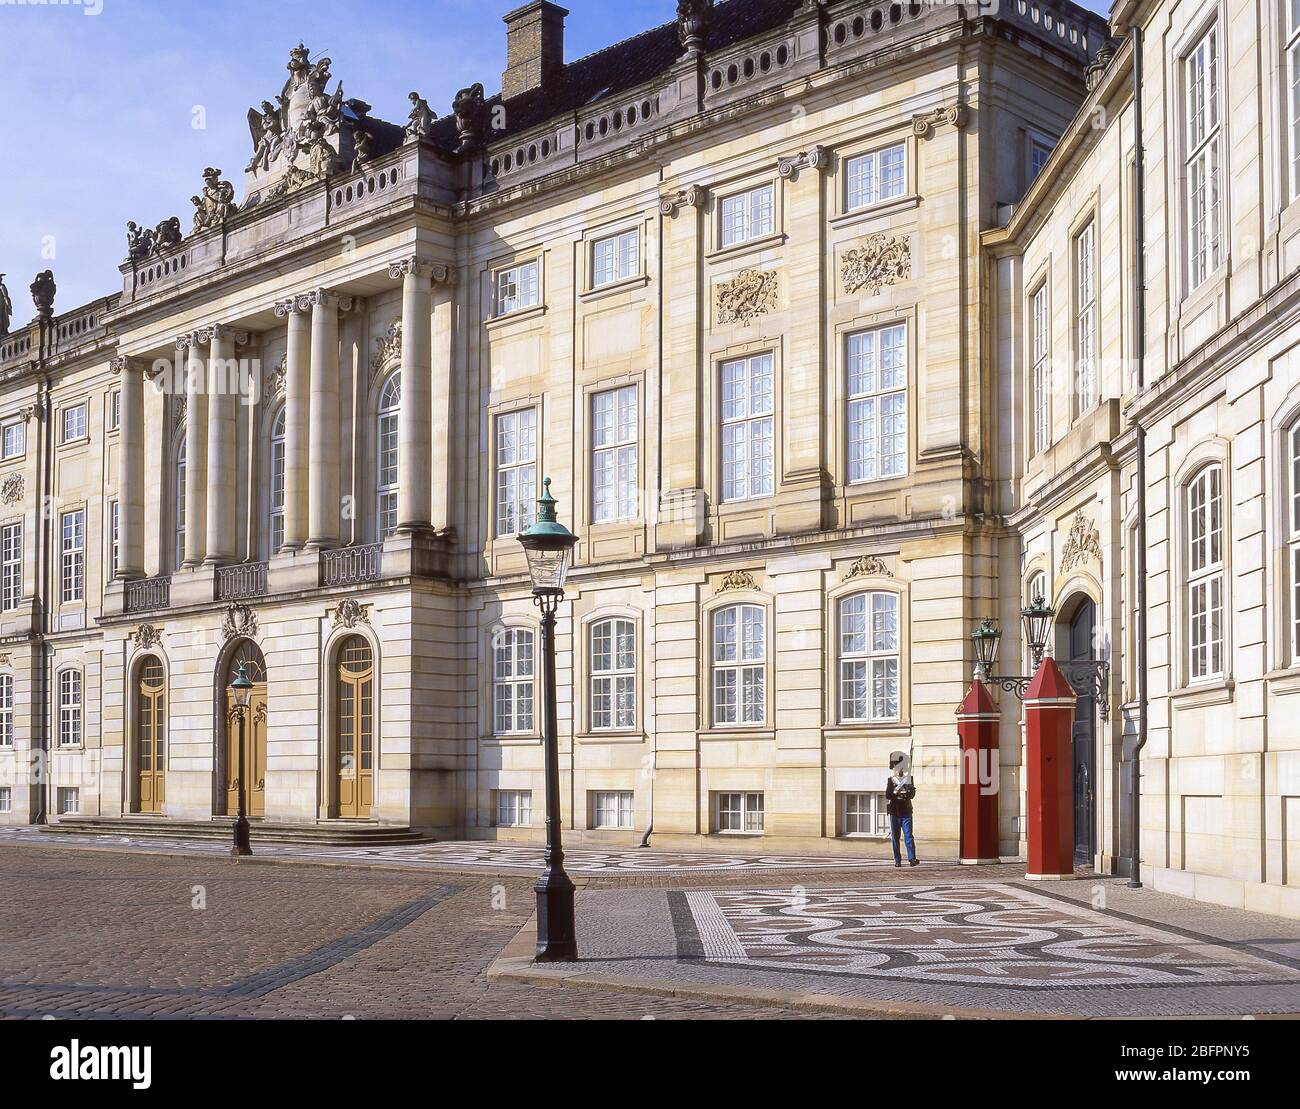 Die Kaisergarde, der Schlossplatz Amalienborg, Frederiksstaden, Kopenhagen (Kobenhavn), Königreich Dänemark Stockfoto